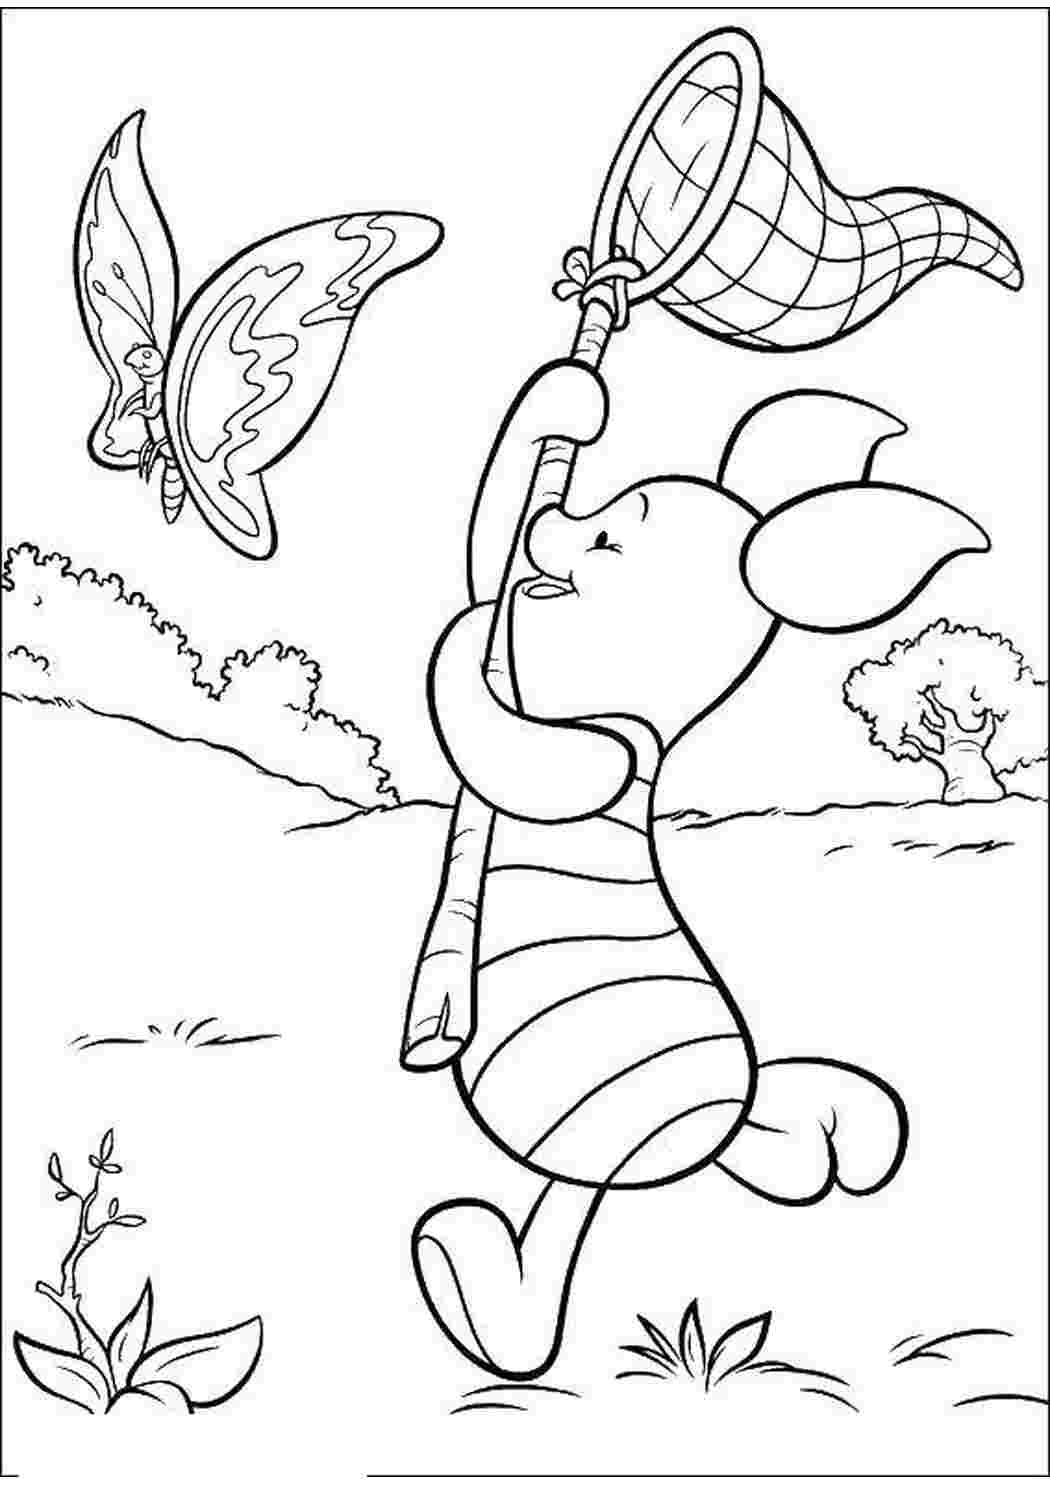 Раскраски Пятачок ловит бабочку Персонаж из мультфильма Дисней, Винни Пух